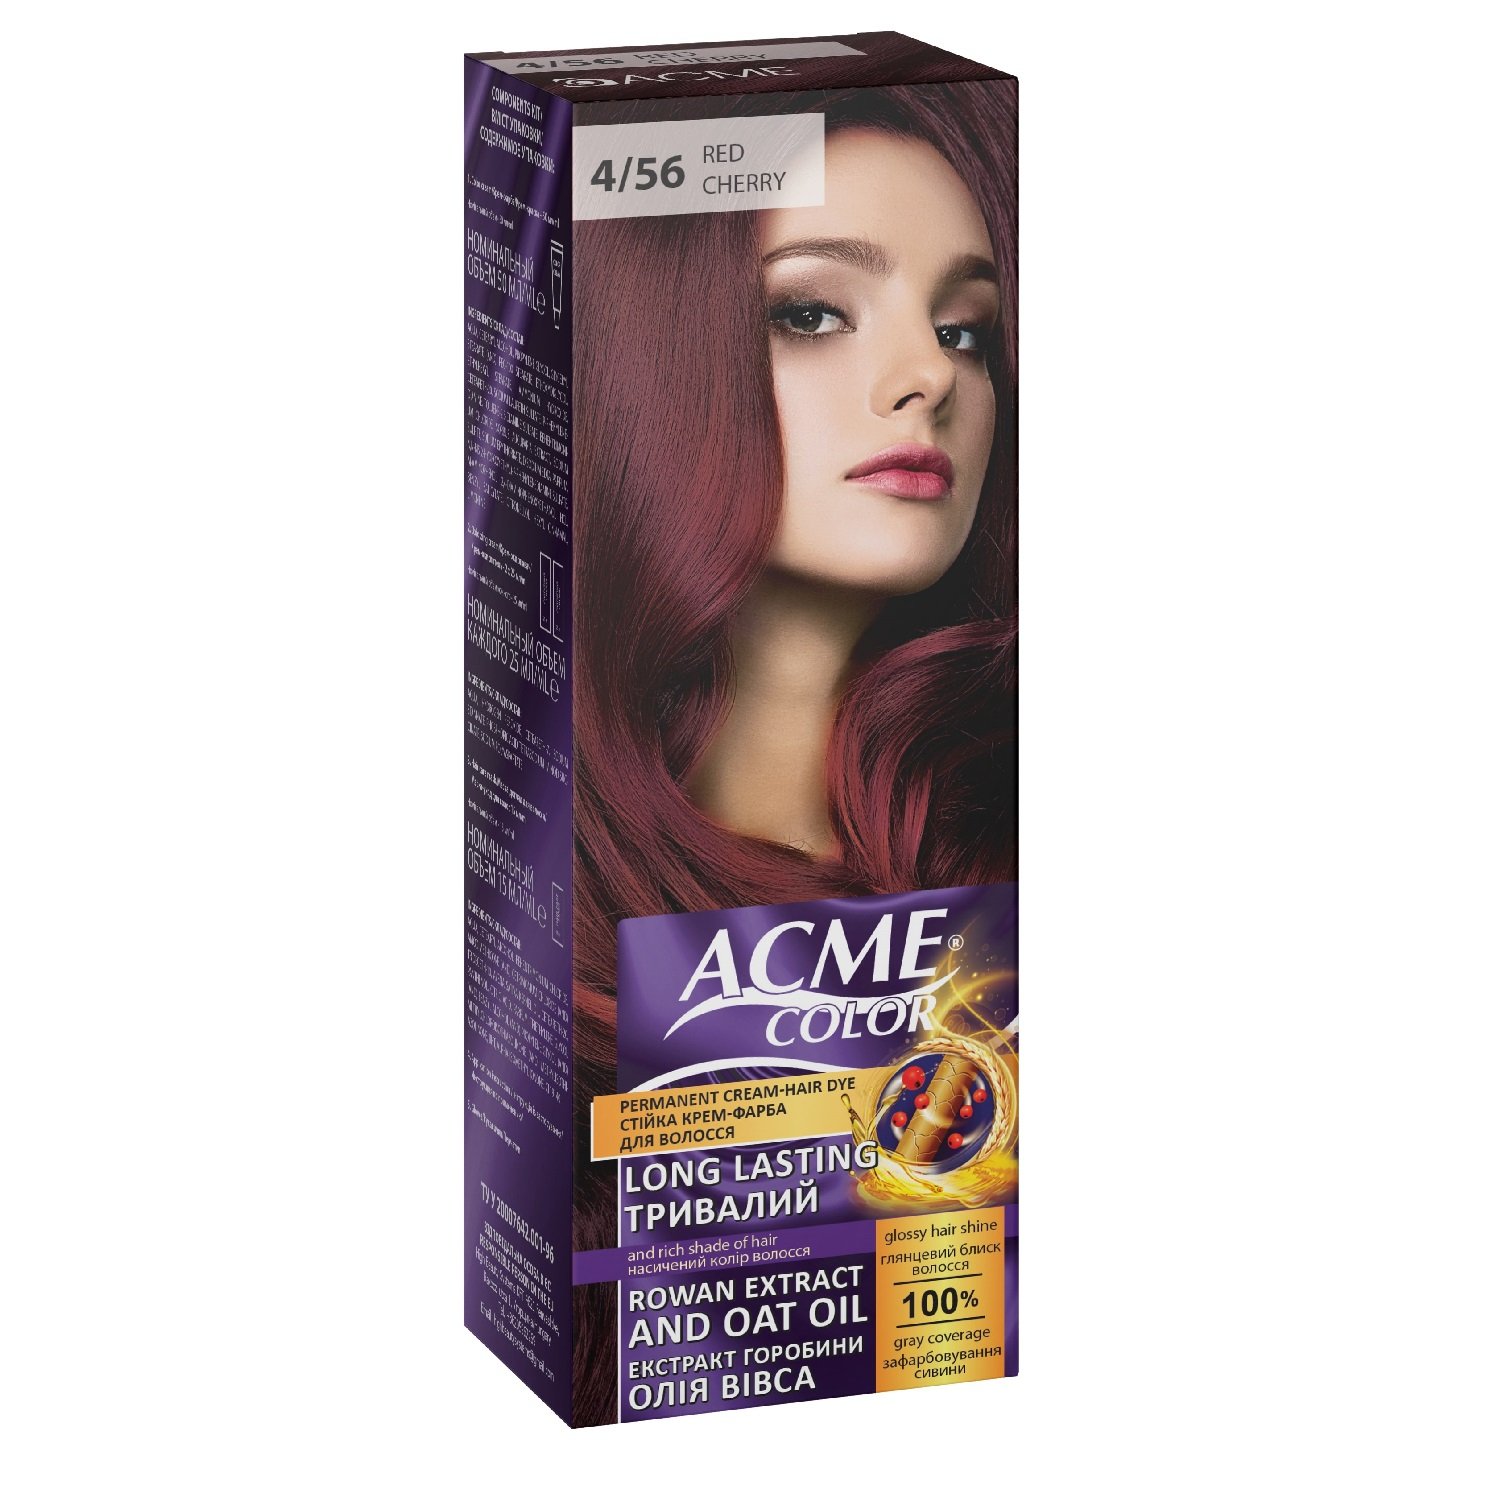 Крем-фарба для волосся Acme Color EXP, відтінок 4/56 (Вишнево-червоний), 115 мл - фото 1